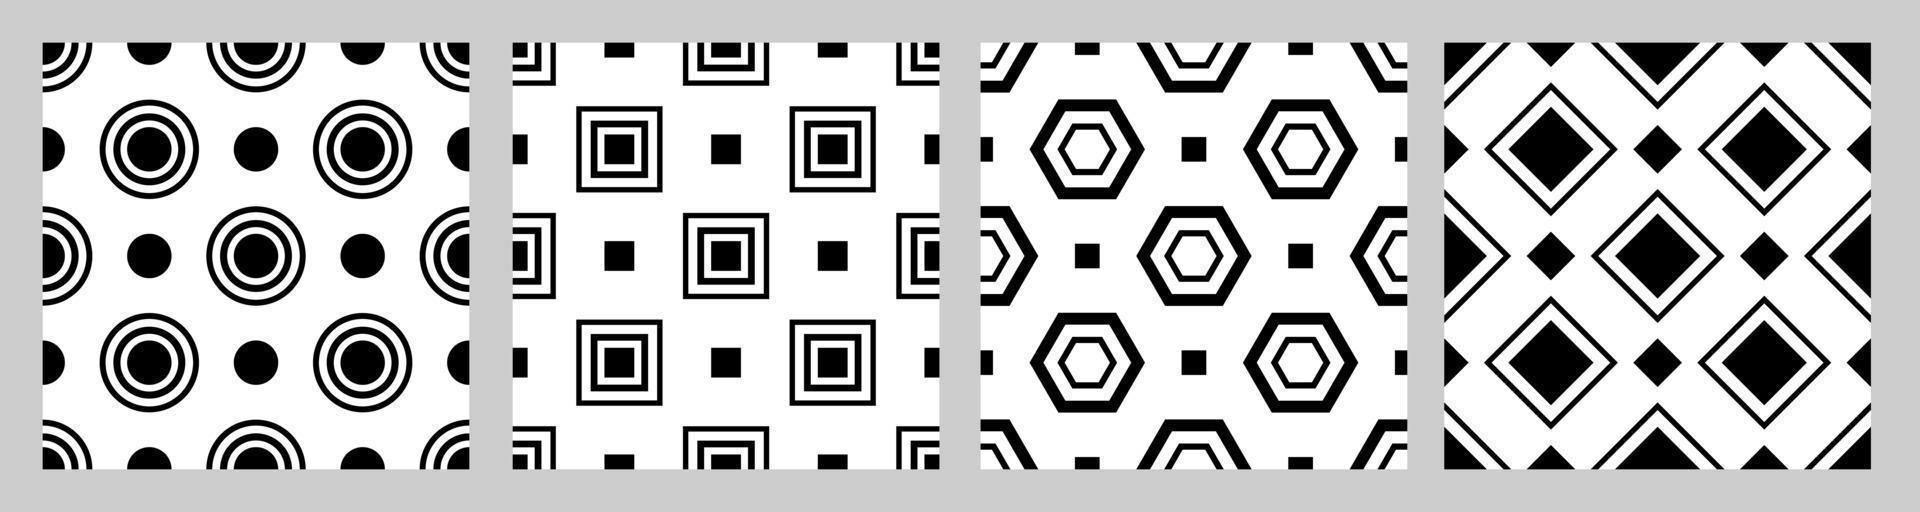 satz geometrisches nahtloses muster mit gestaffelten figuren. schwarze Formen auf weißem Hintergrund. Quadrat, Kreis, Fünfeck, Raute vektor